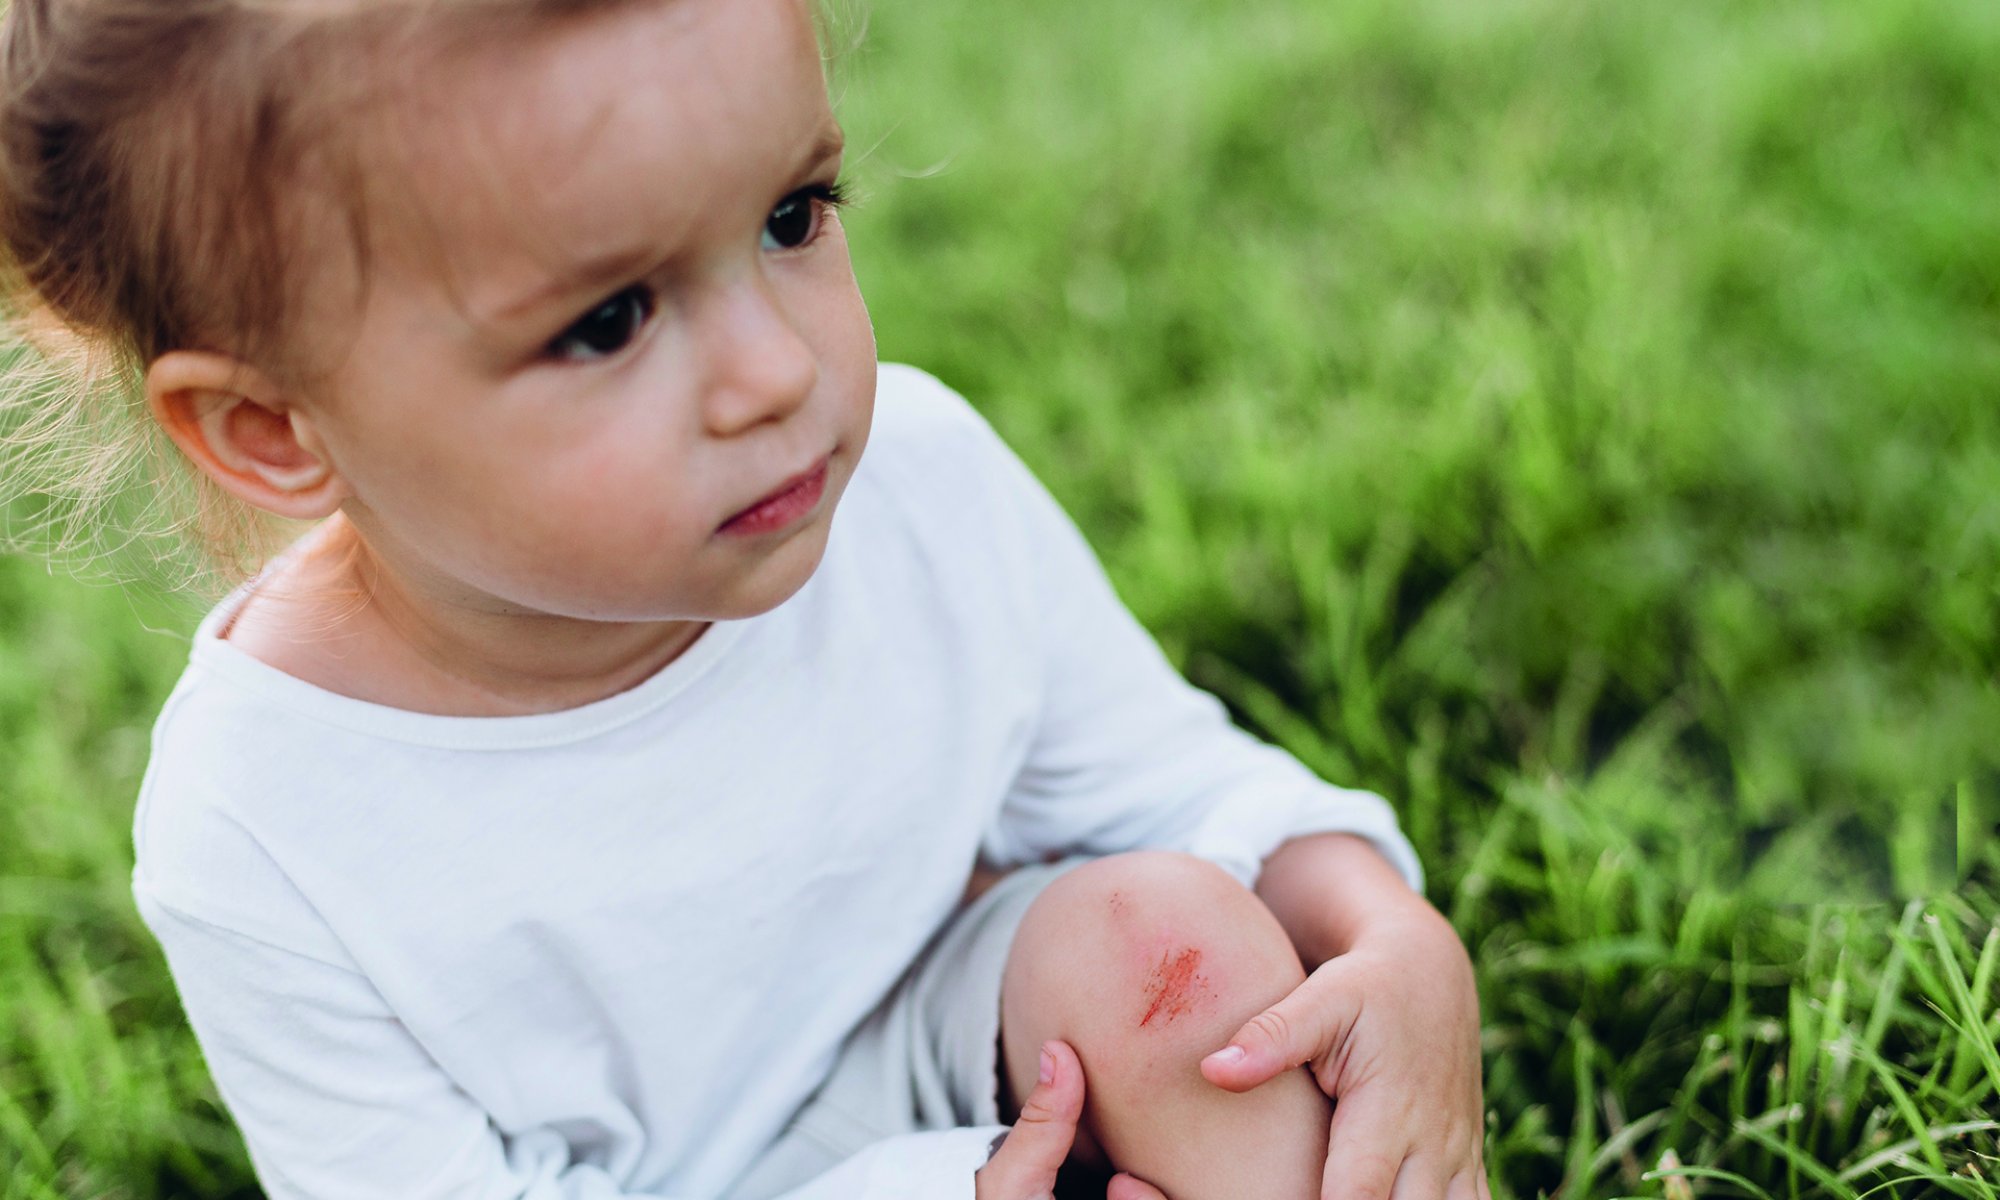 Nasveti pediatrinje ob pikih, ranah, odrgninah in podobnih neprijetnostih, ki spremljajo vroče poletne dni.